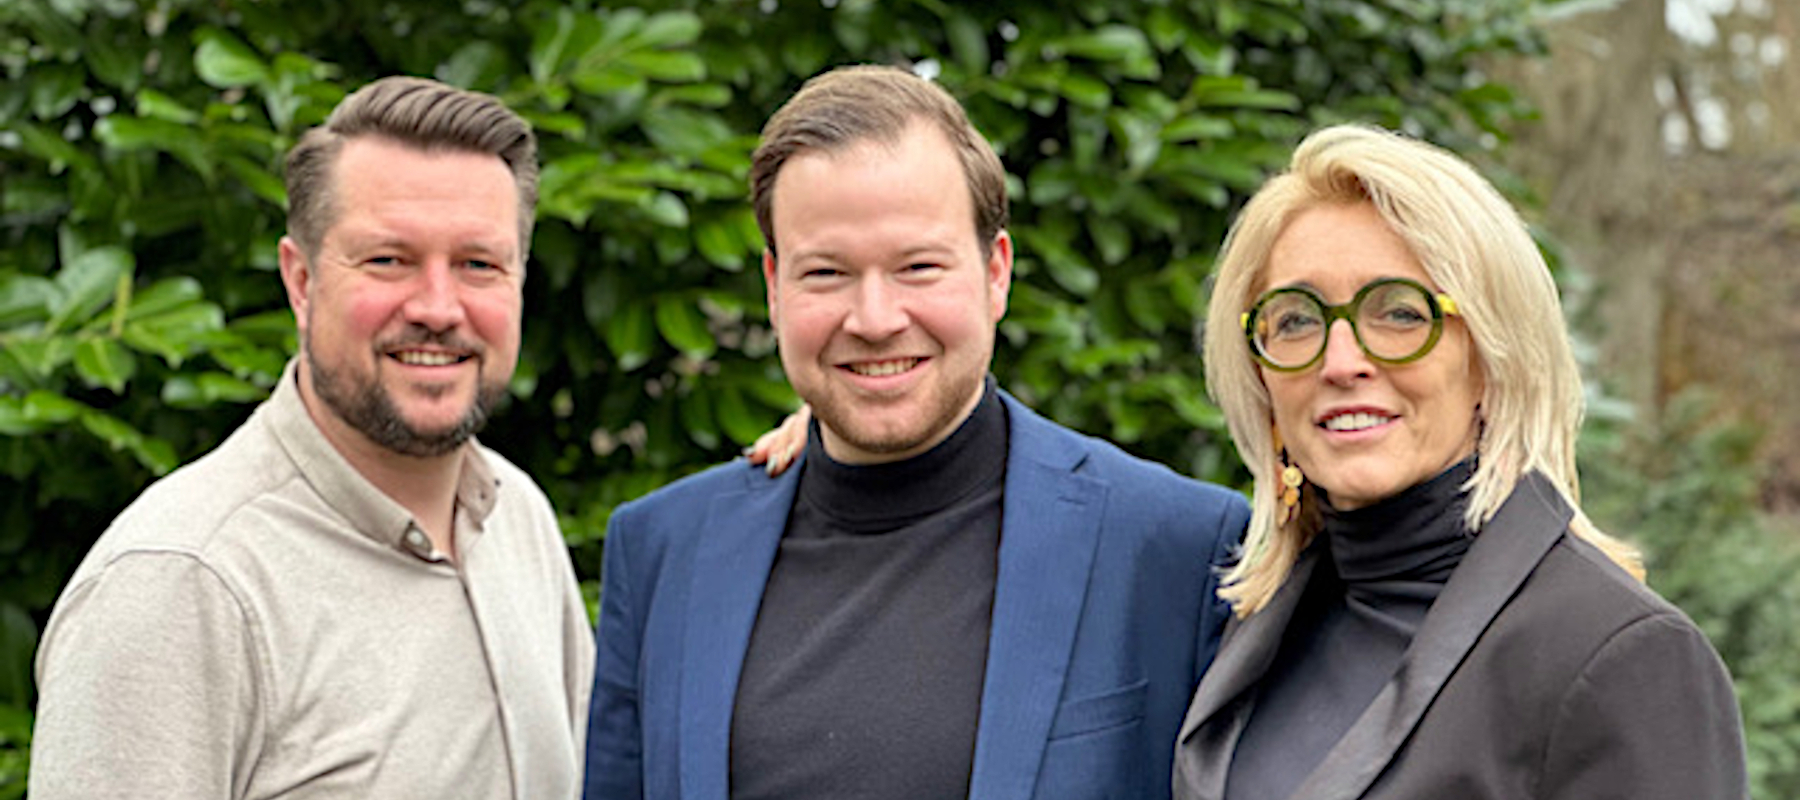 Nathalie Peters en Marc Gooijer lanceren FRISK Agency - Michiel van der Ven heeft dagelijkse leiding